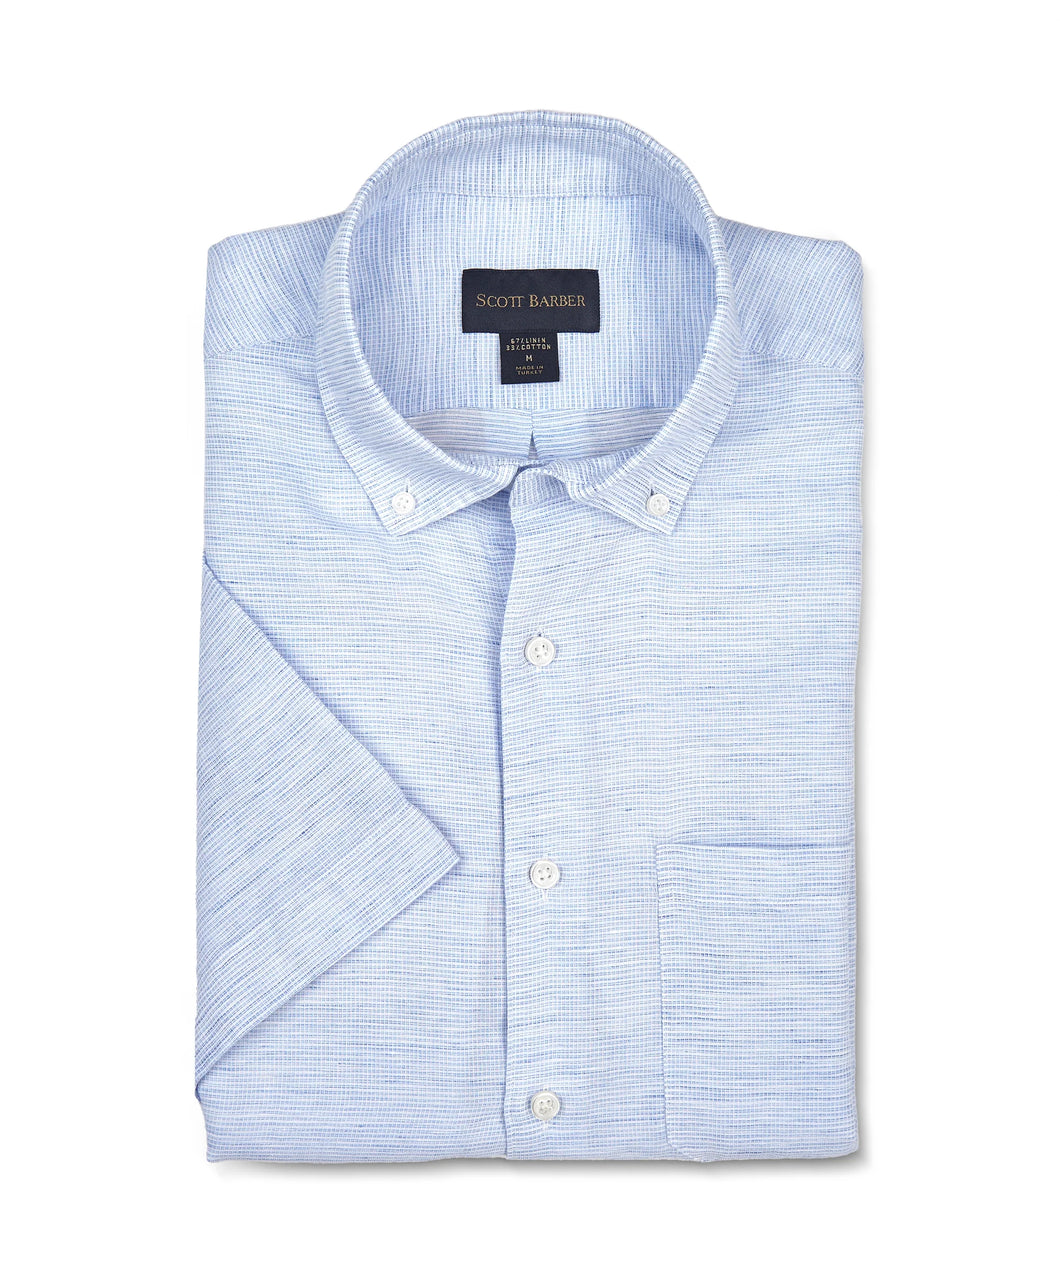 Scott Barber Short Sleeve Linen/Cotton Sport Shirt in Sky